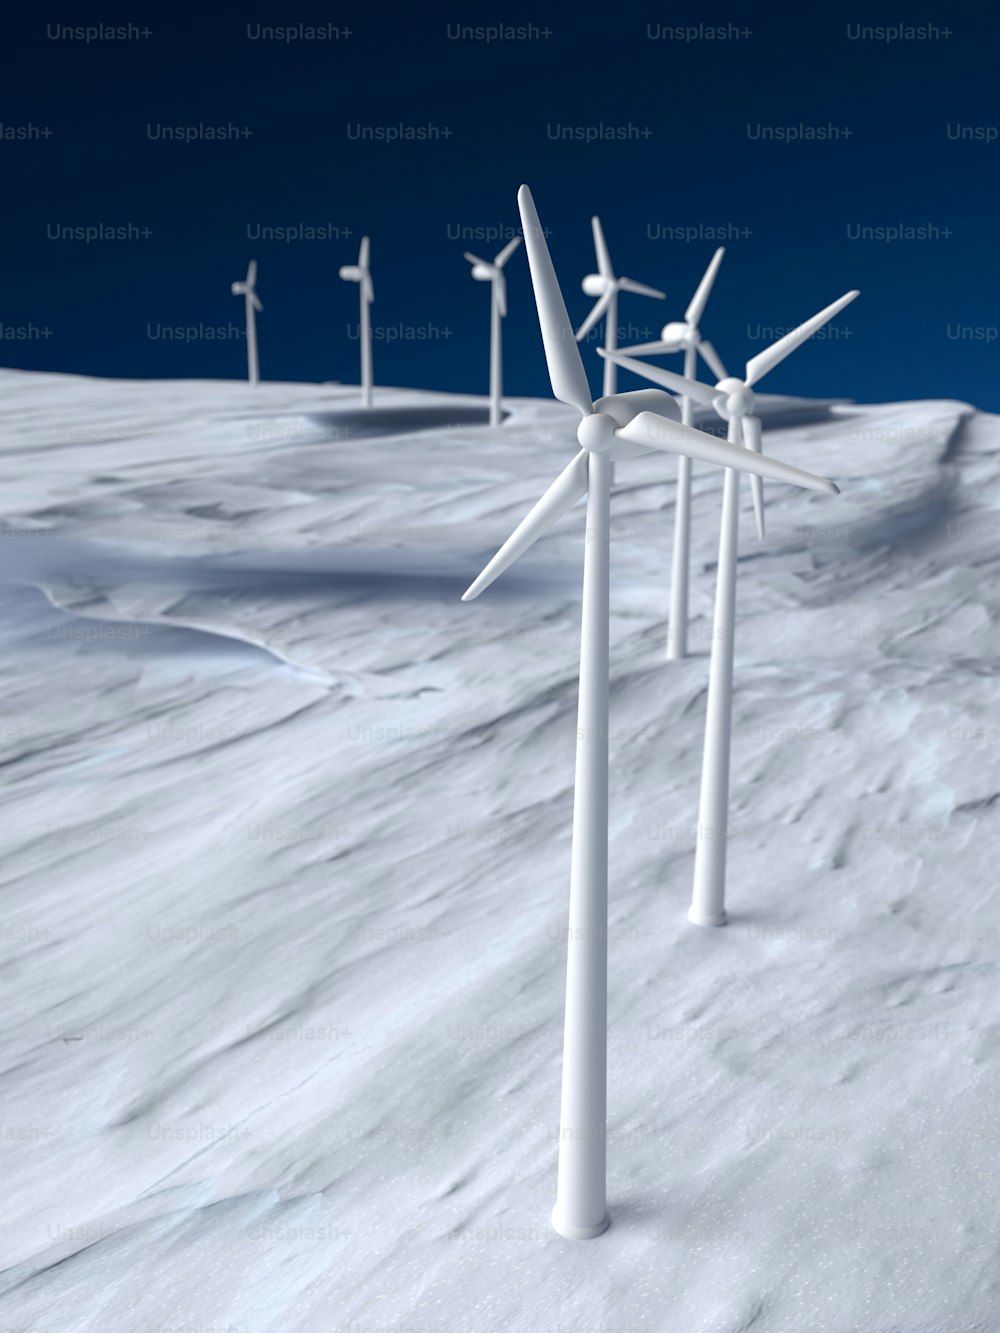 Un grupo de turbinas eólicas de pie en la cima de una pendiente cubierta de nieve